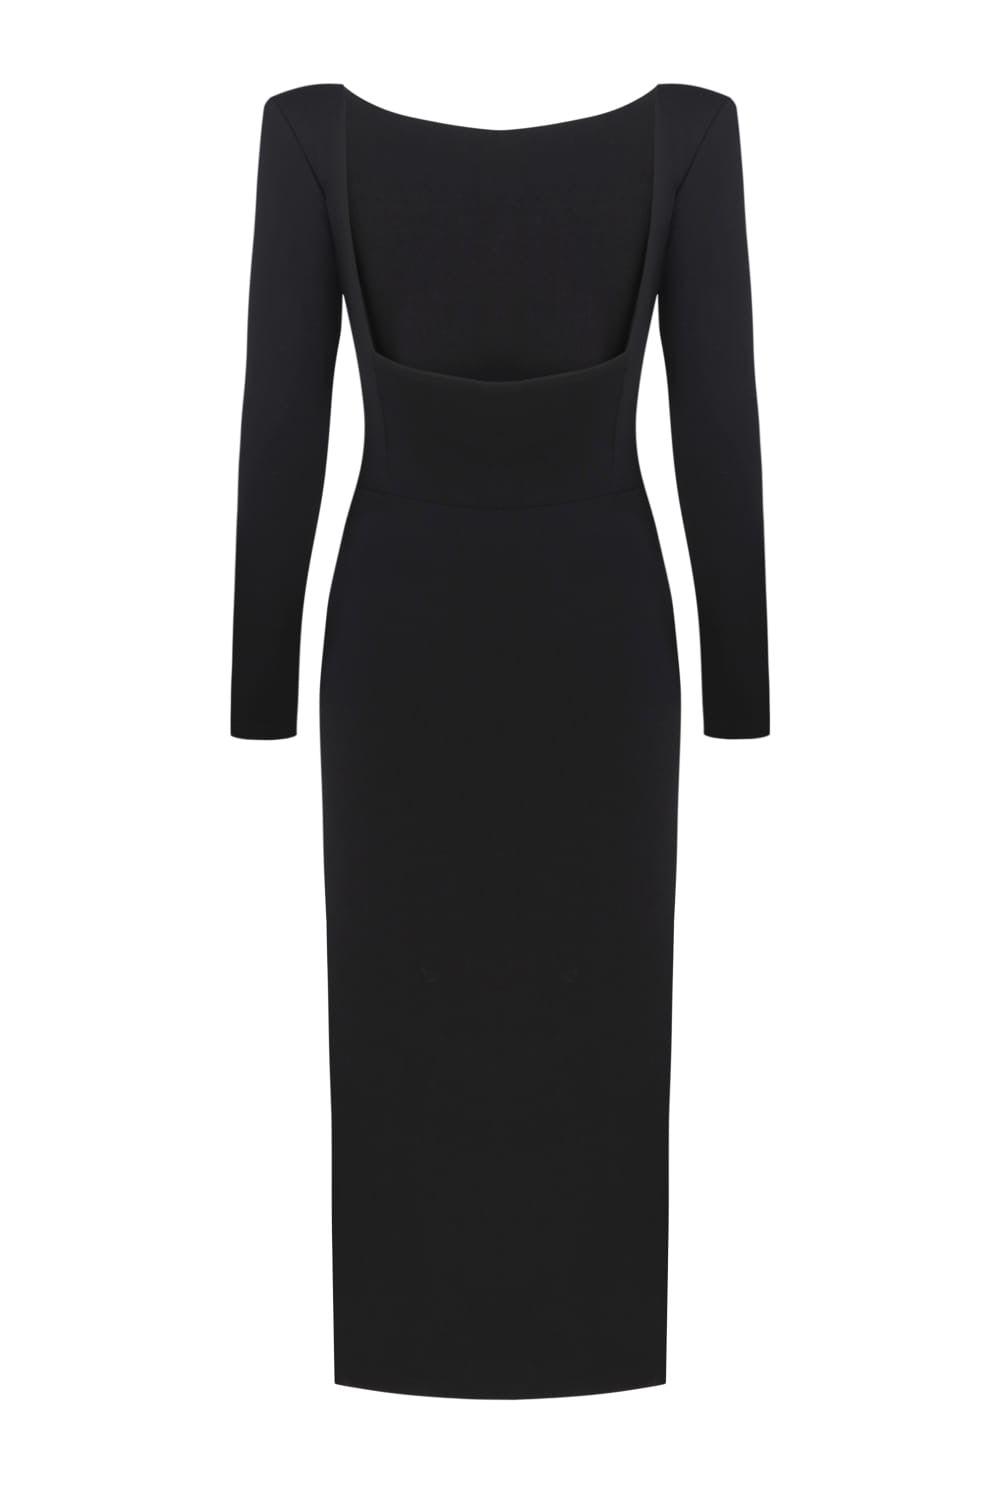 Black Midi Dress | Evening Dresses | Elegant Black Dress